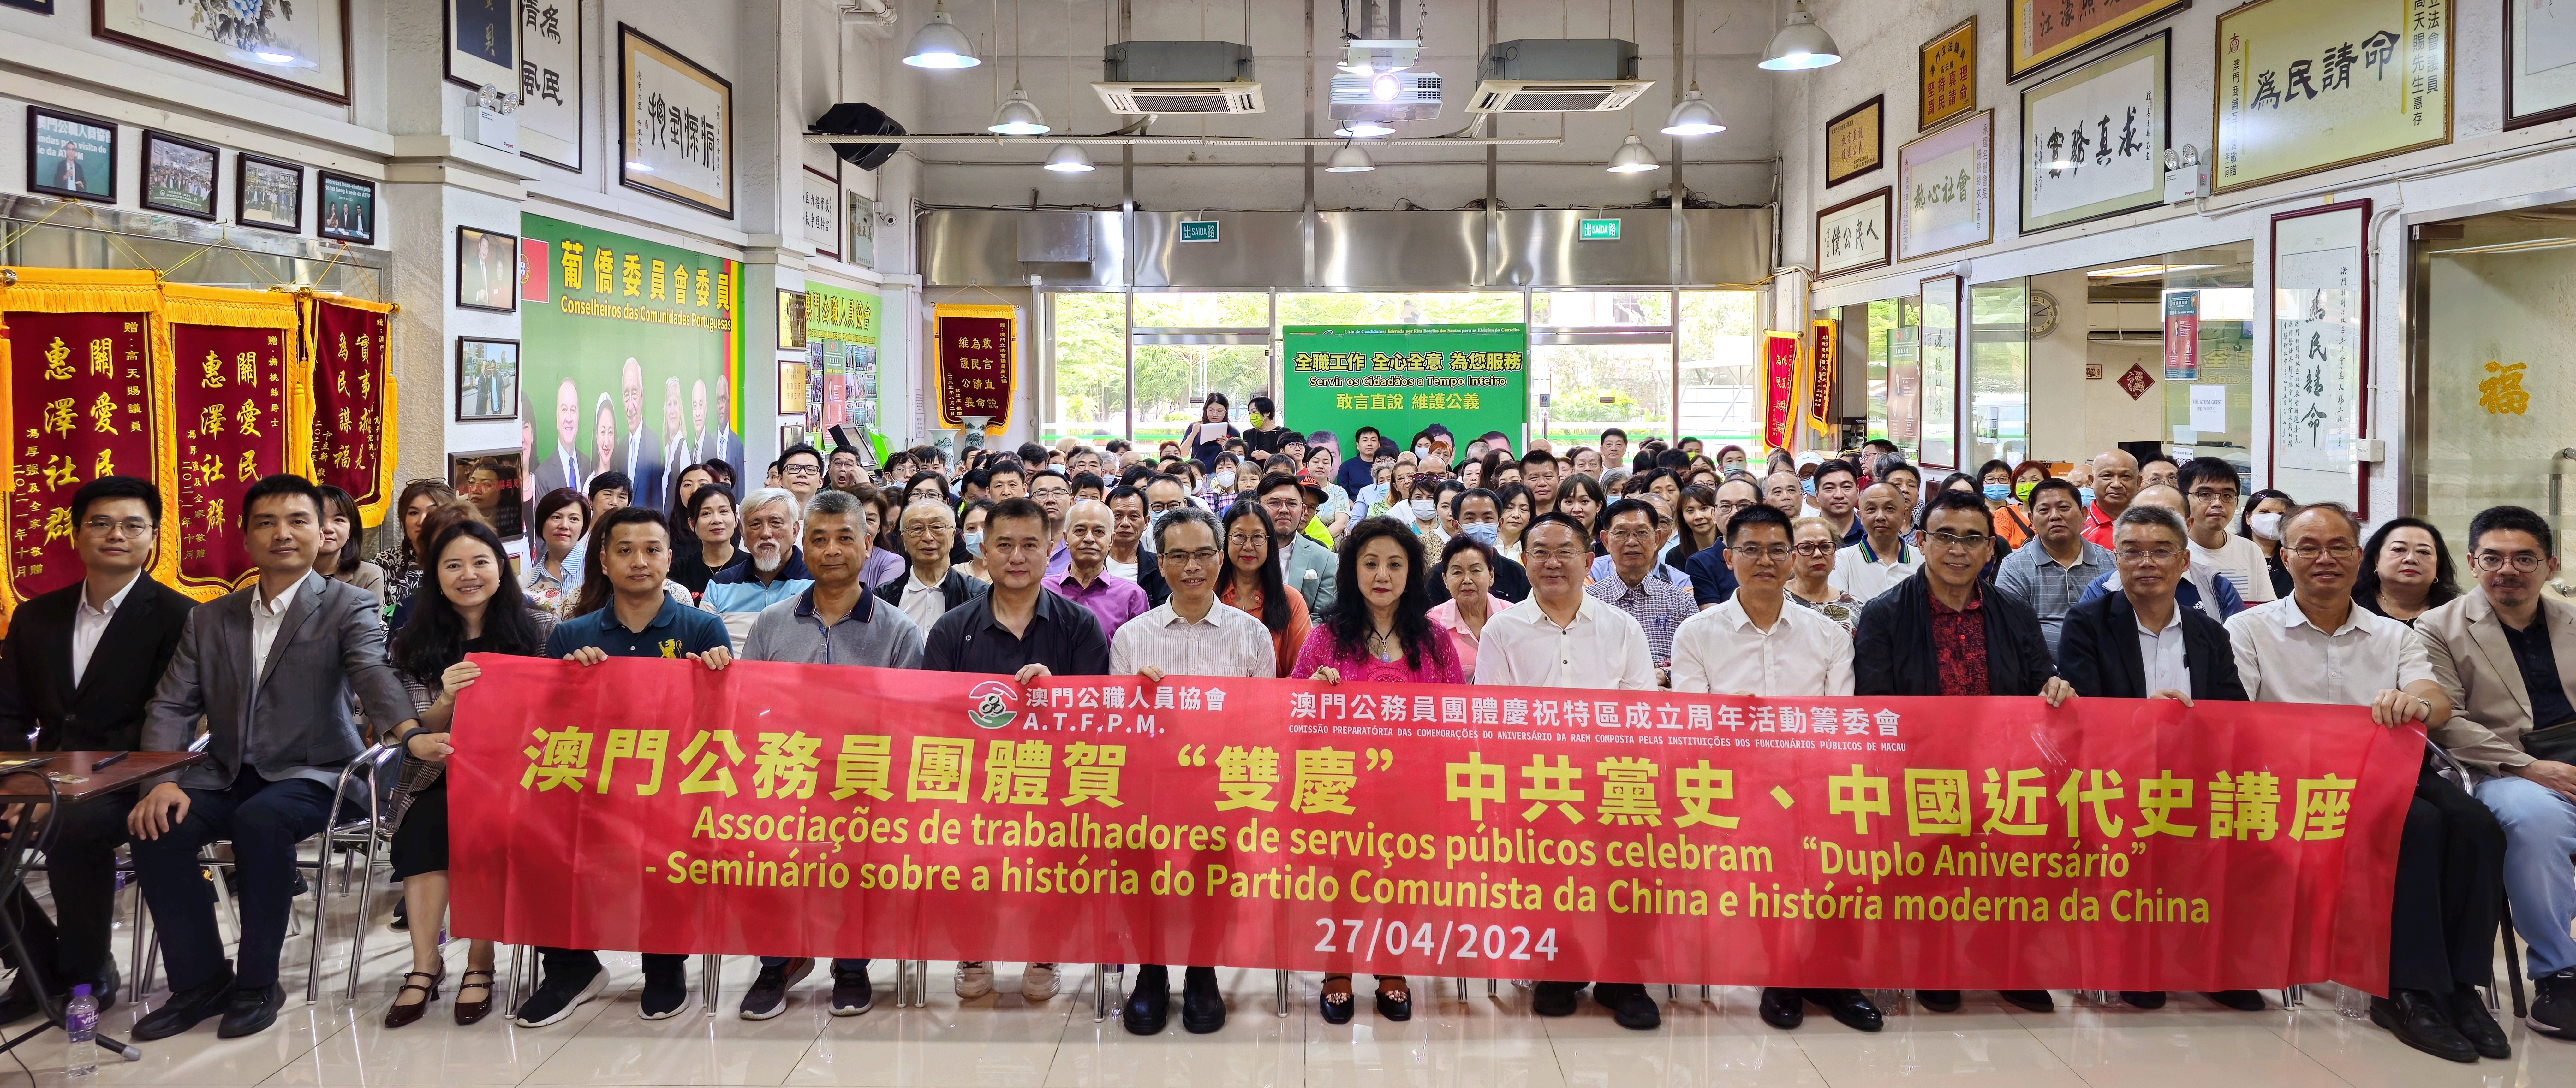 公慶會舉辦「澳門公務員團體賀『雙慶』中共黨史、中國近現代史講座」